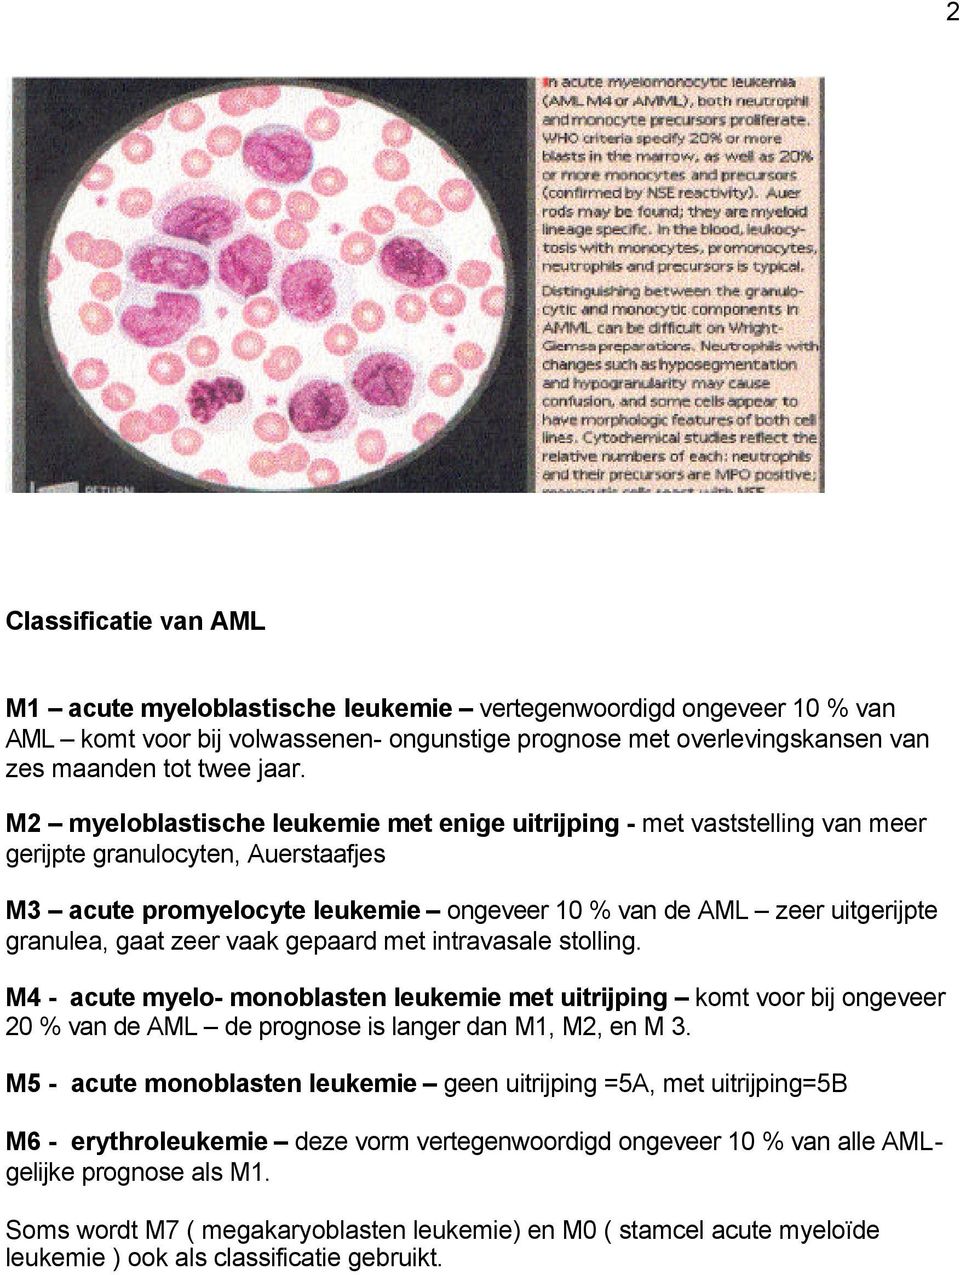 gaat zeer vaak gepaard met intravasale stolling. M4 - acute myelo- monoblasten leukemie met uitrijping komt voor bij ongeveer 20 % van de AML de prognose is langer dan M1, M2, en M 3.